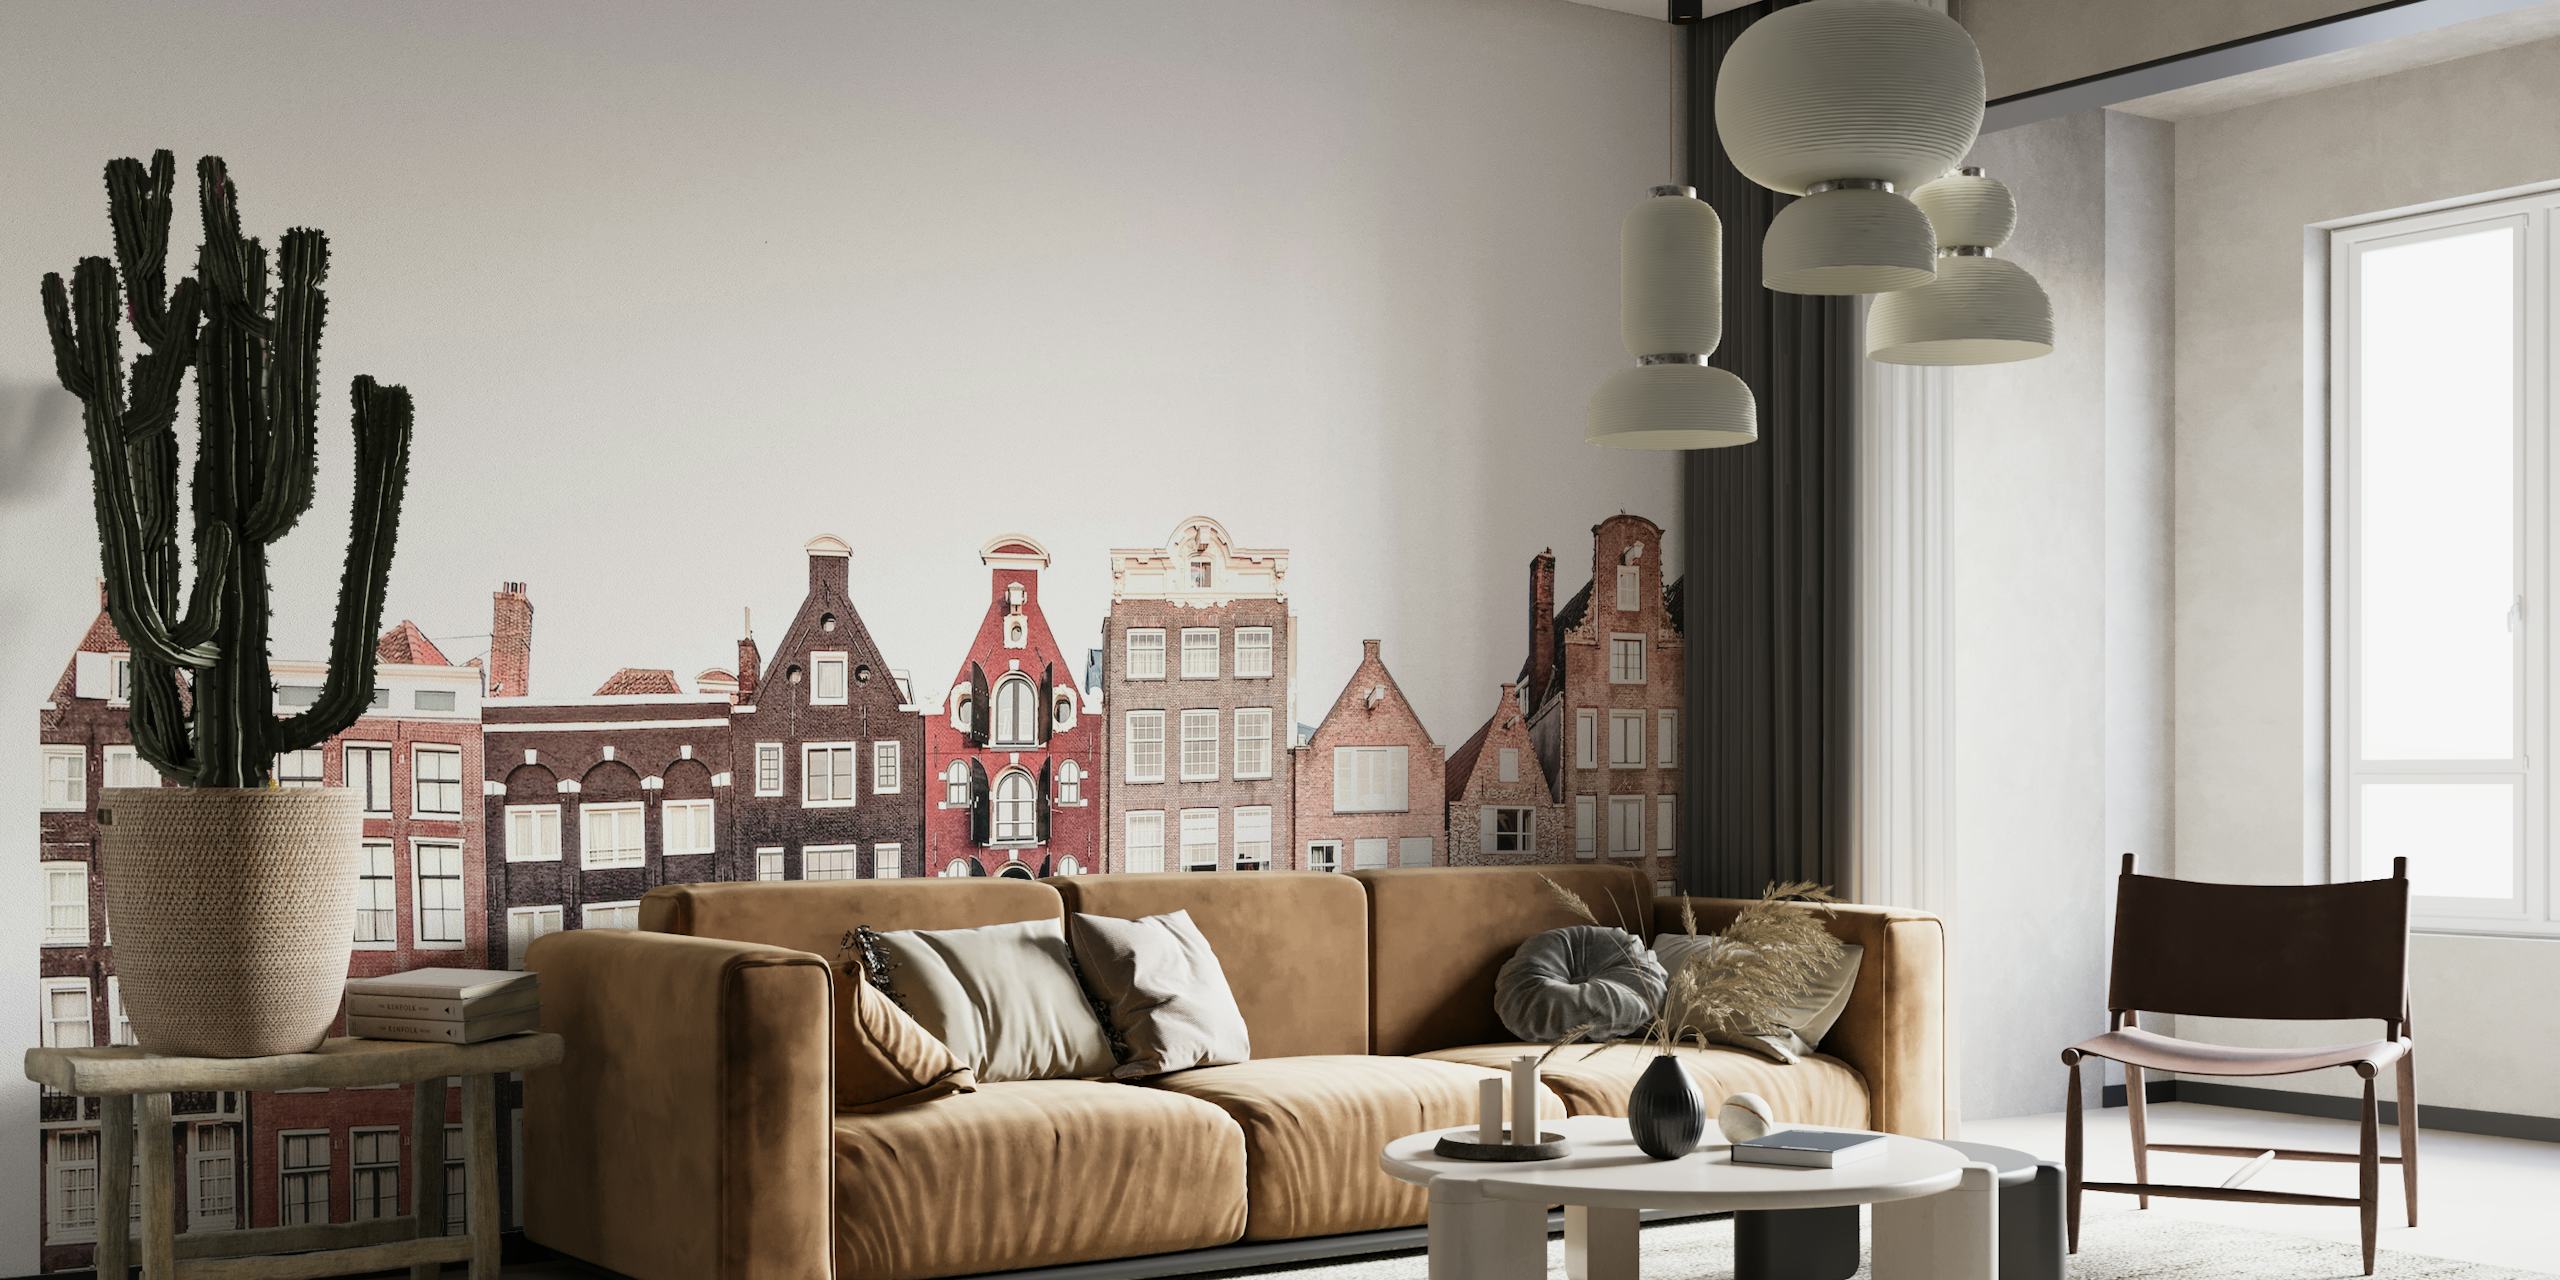 Dutch Houses papel pintado